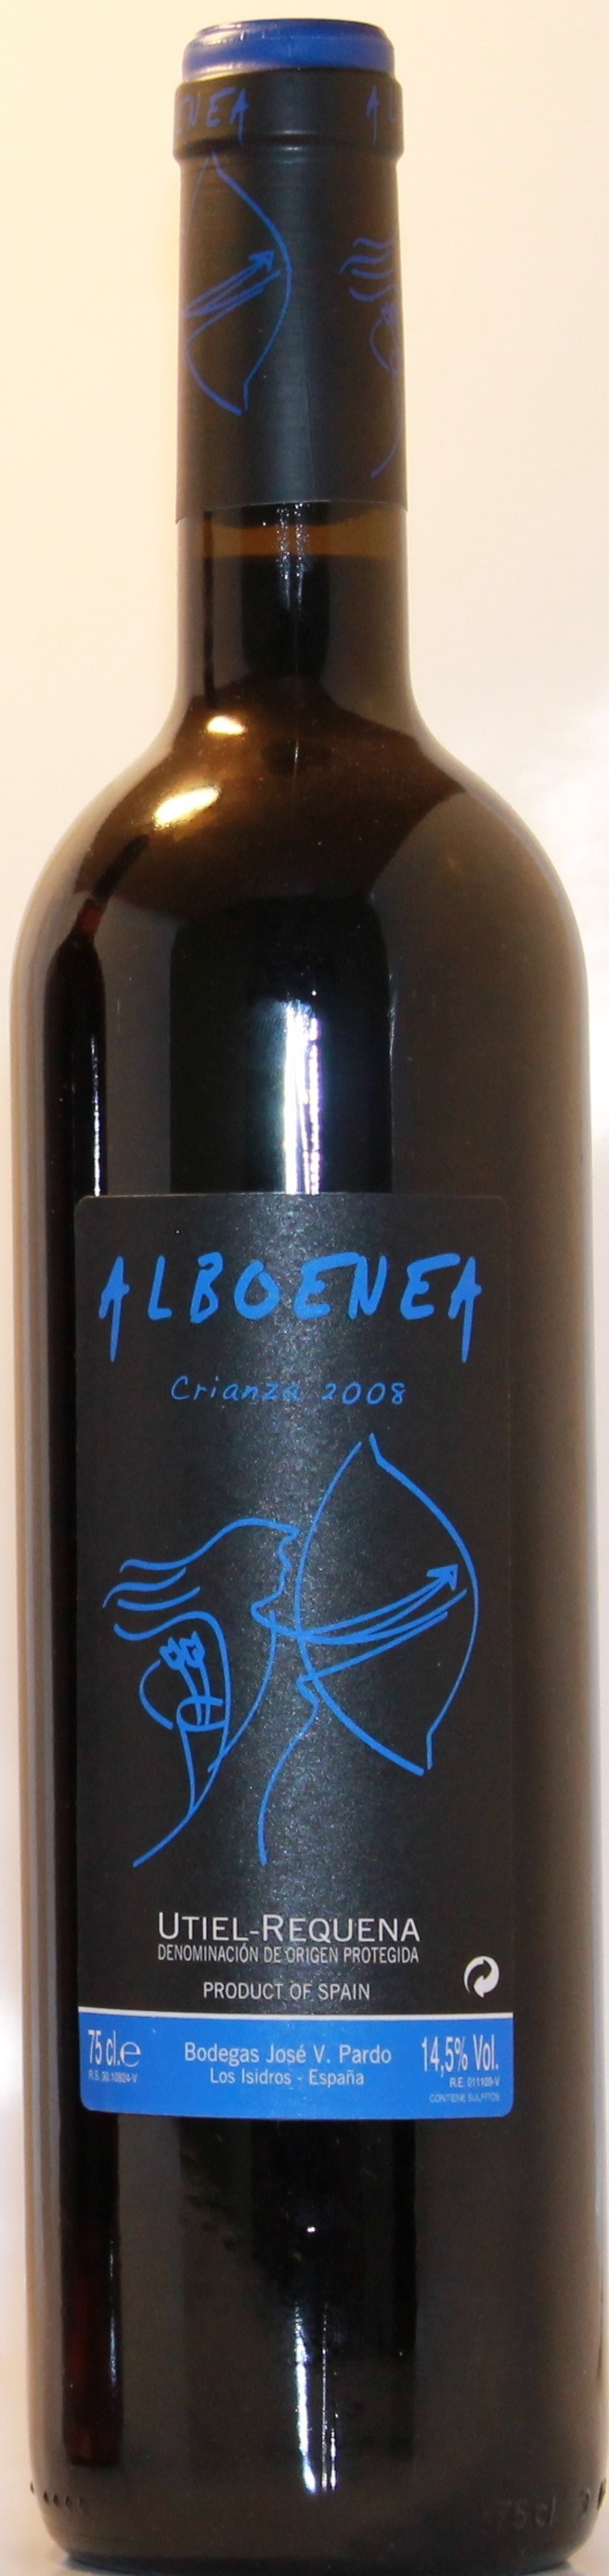 Logo Wein Alboenea